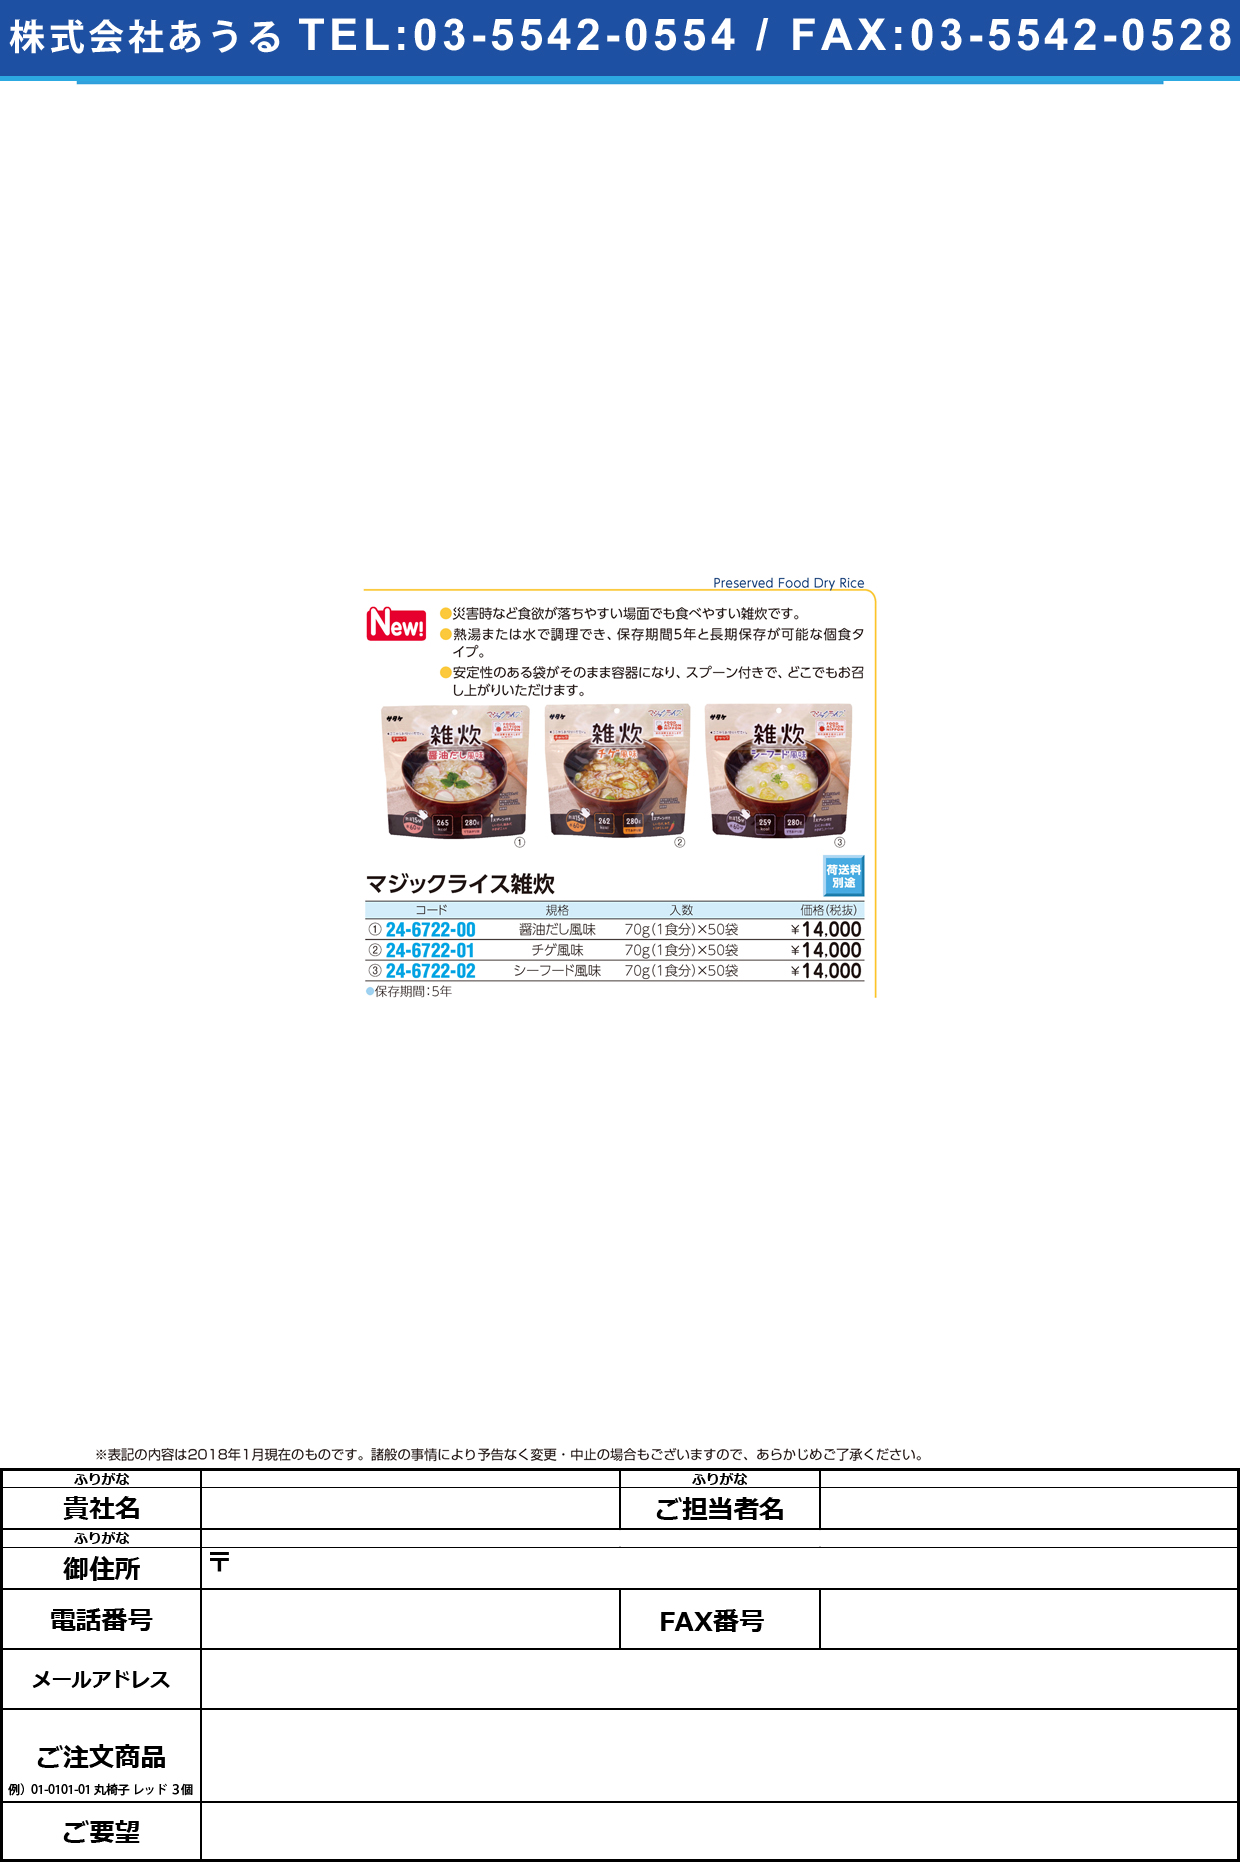 (24-6722-00)マジックライス雑炊醤油だし風味 (70G･1ｼｮｸ)50ﾌｸﾛ ﾏｼﾞｯｸﾗｲｽｿﾞｳｽｲ【1箱単位】【2018年カタログ商品】